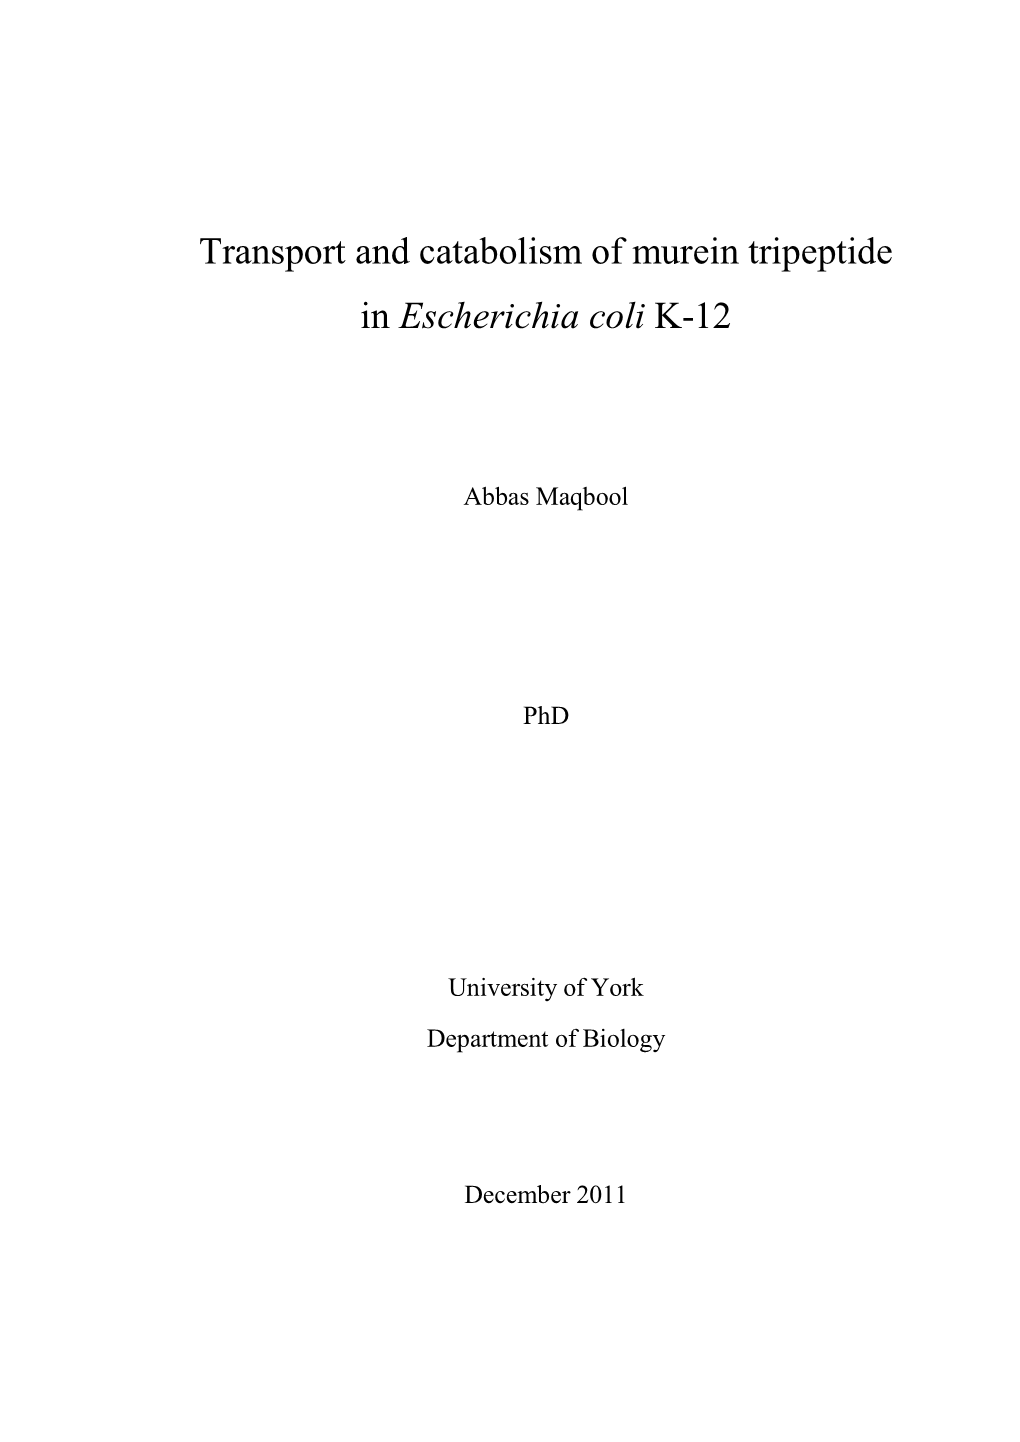 Transport and Catabolism of Murein Tripeptide in Escherichia Coli K-12